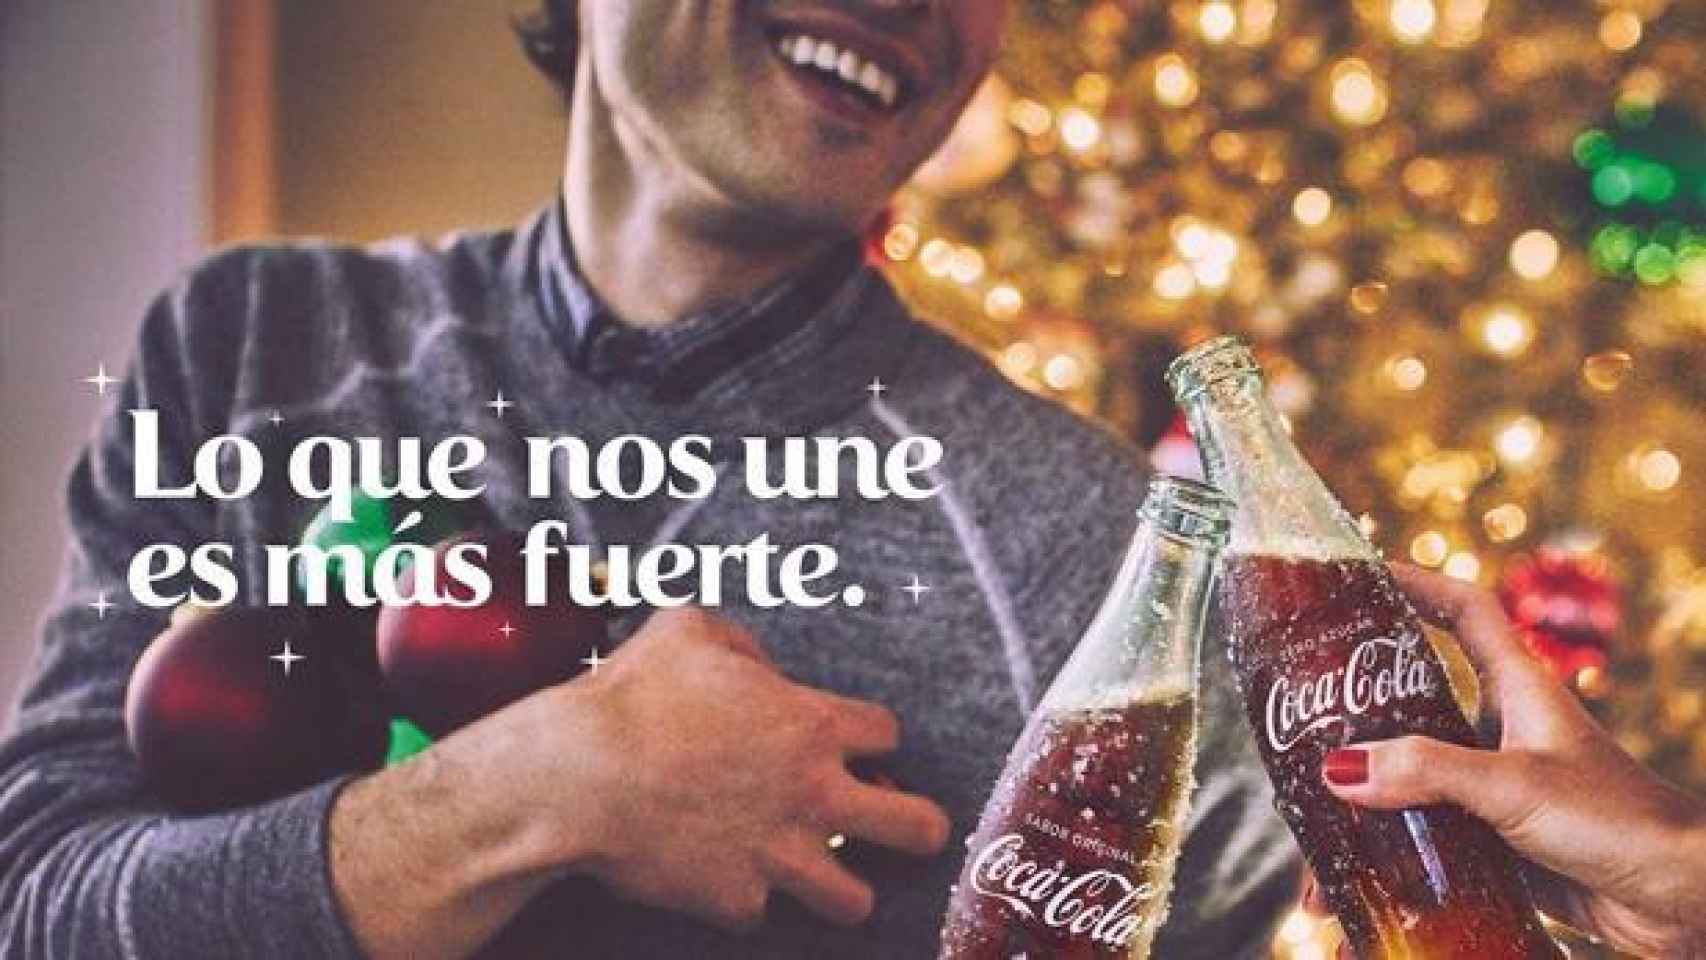 Parte de un anuncio de Coca Cola.